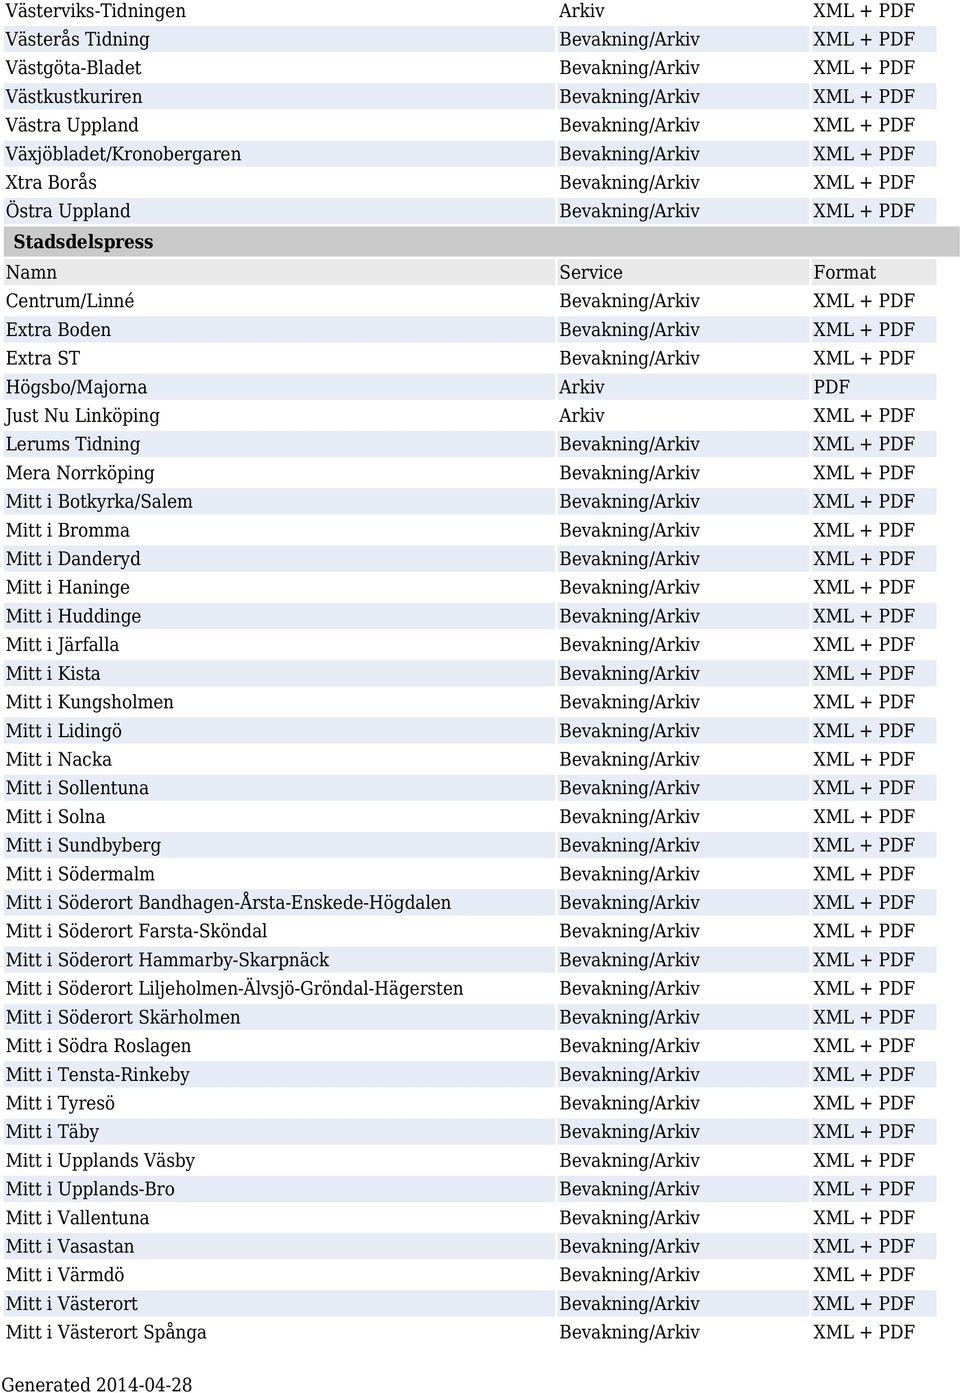 Boden Bevakning/Arkiv XML + PDF Extra ST Bevakning/Arkiv XML + PDF Högsbo/Majorna Arkiv PDF Just Nu Linköping Arkiv XML + PDF Lerums Tidning Bevakning/Arkiv XML + PDF Mera Norrköping Bevakning/Arkiv